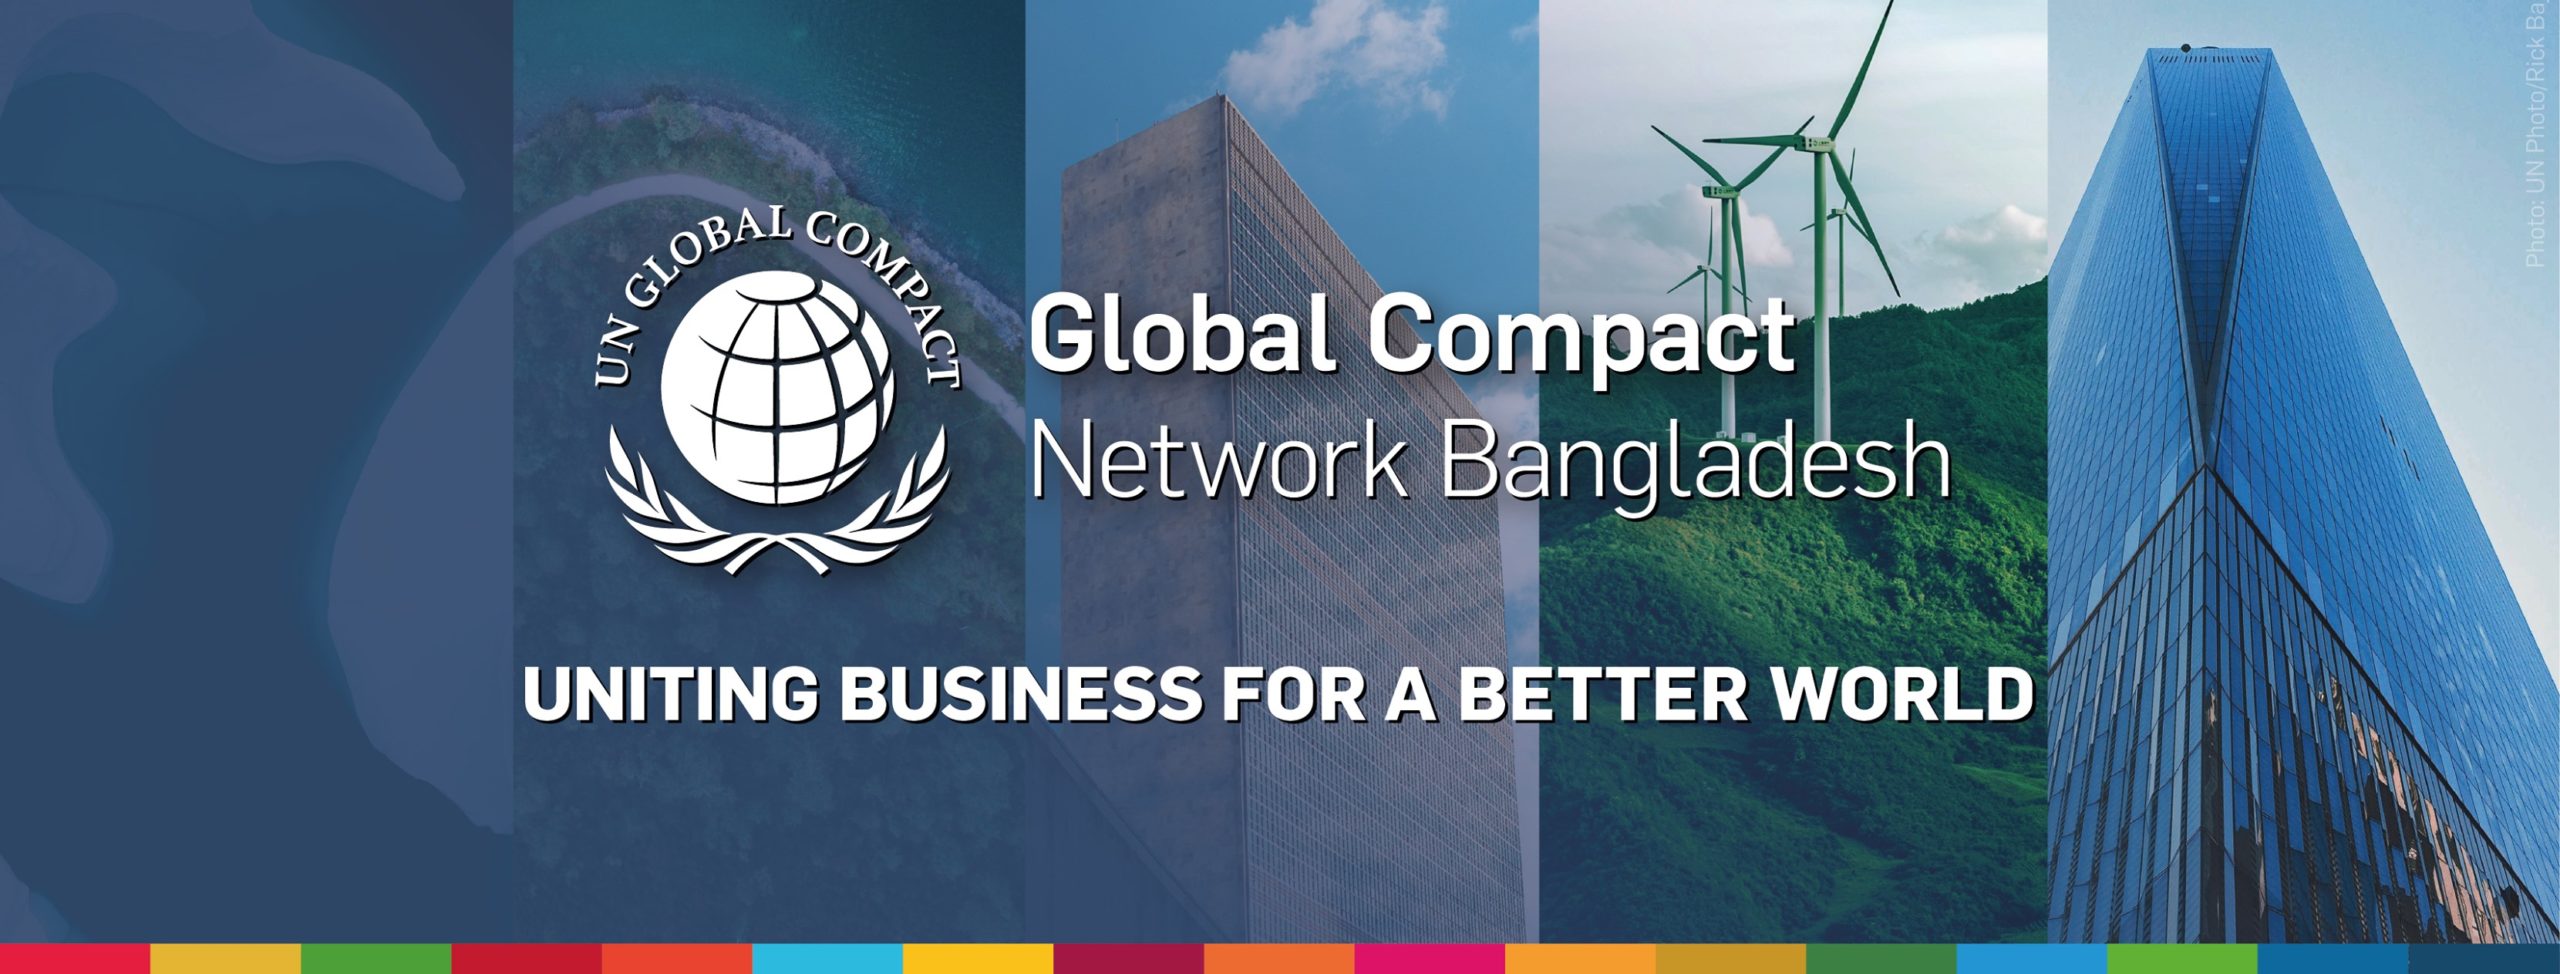 Global Compact Network Bangladesh